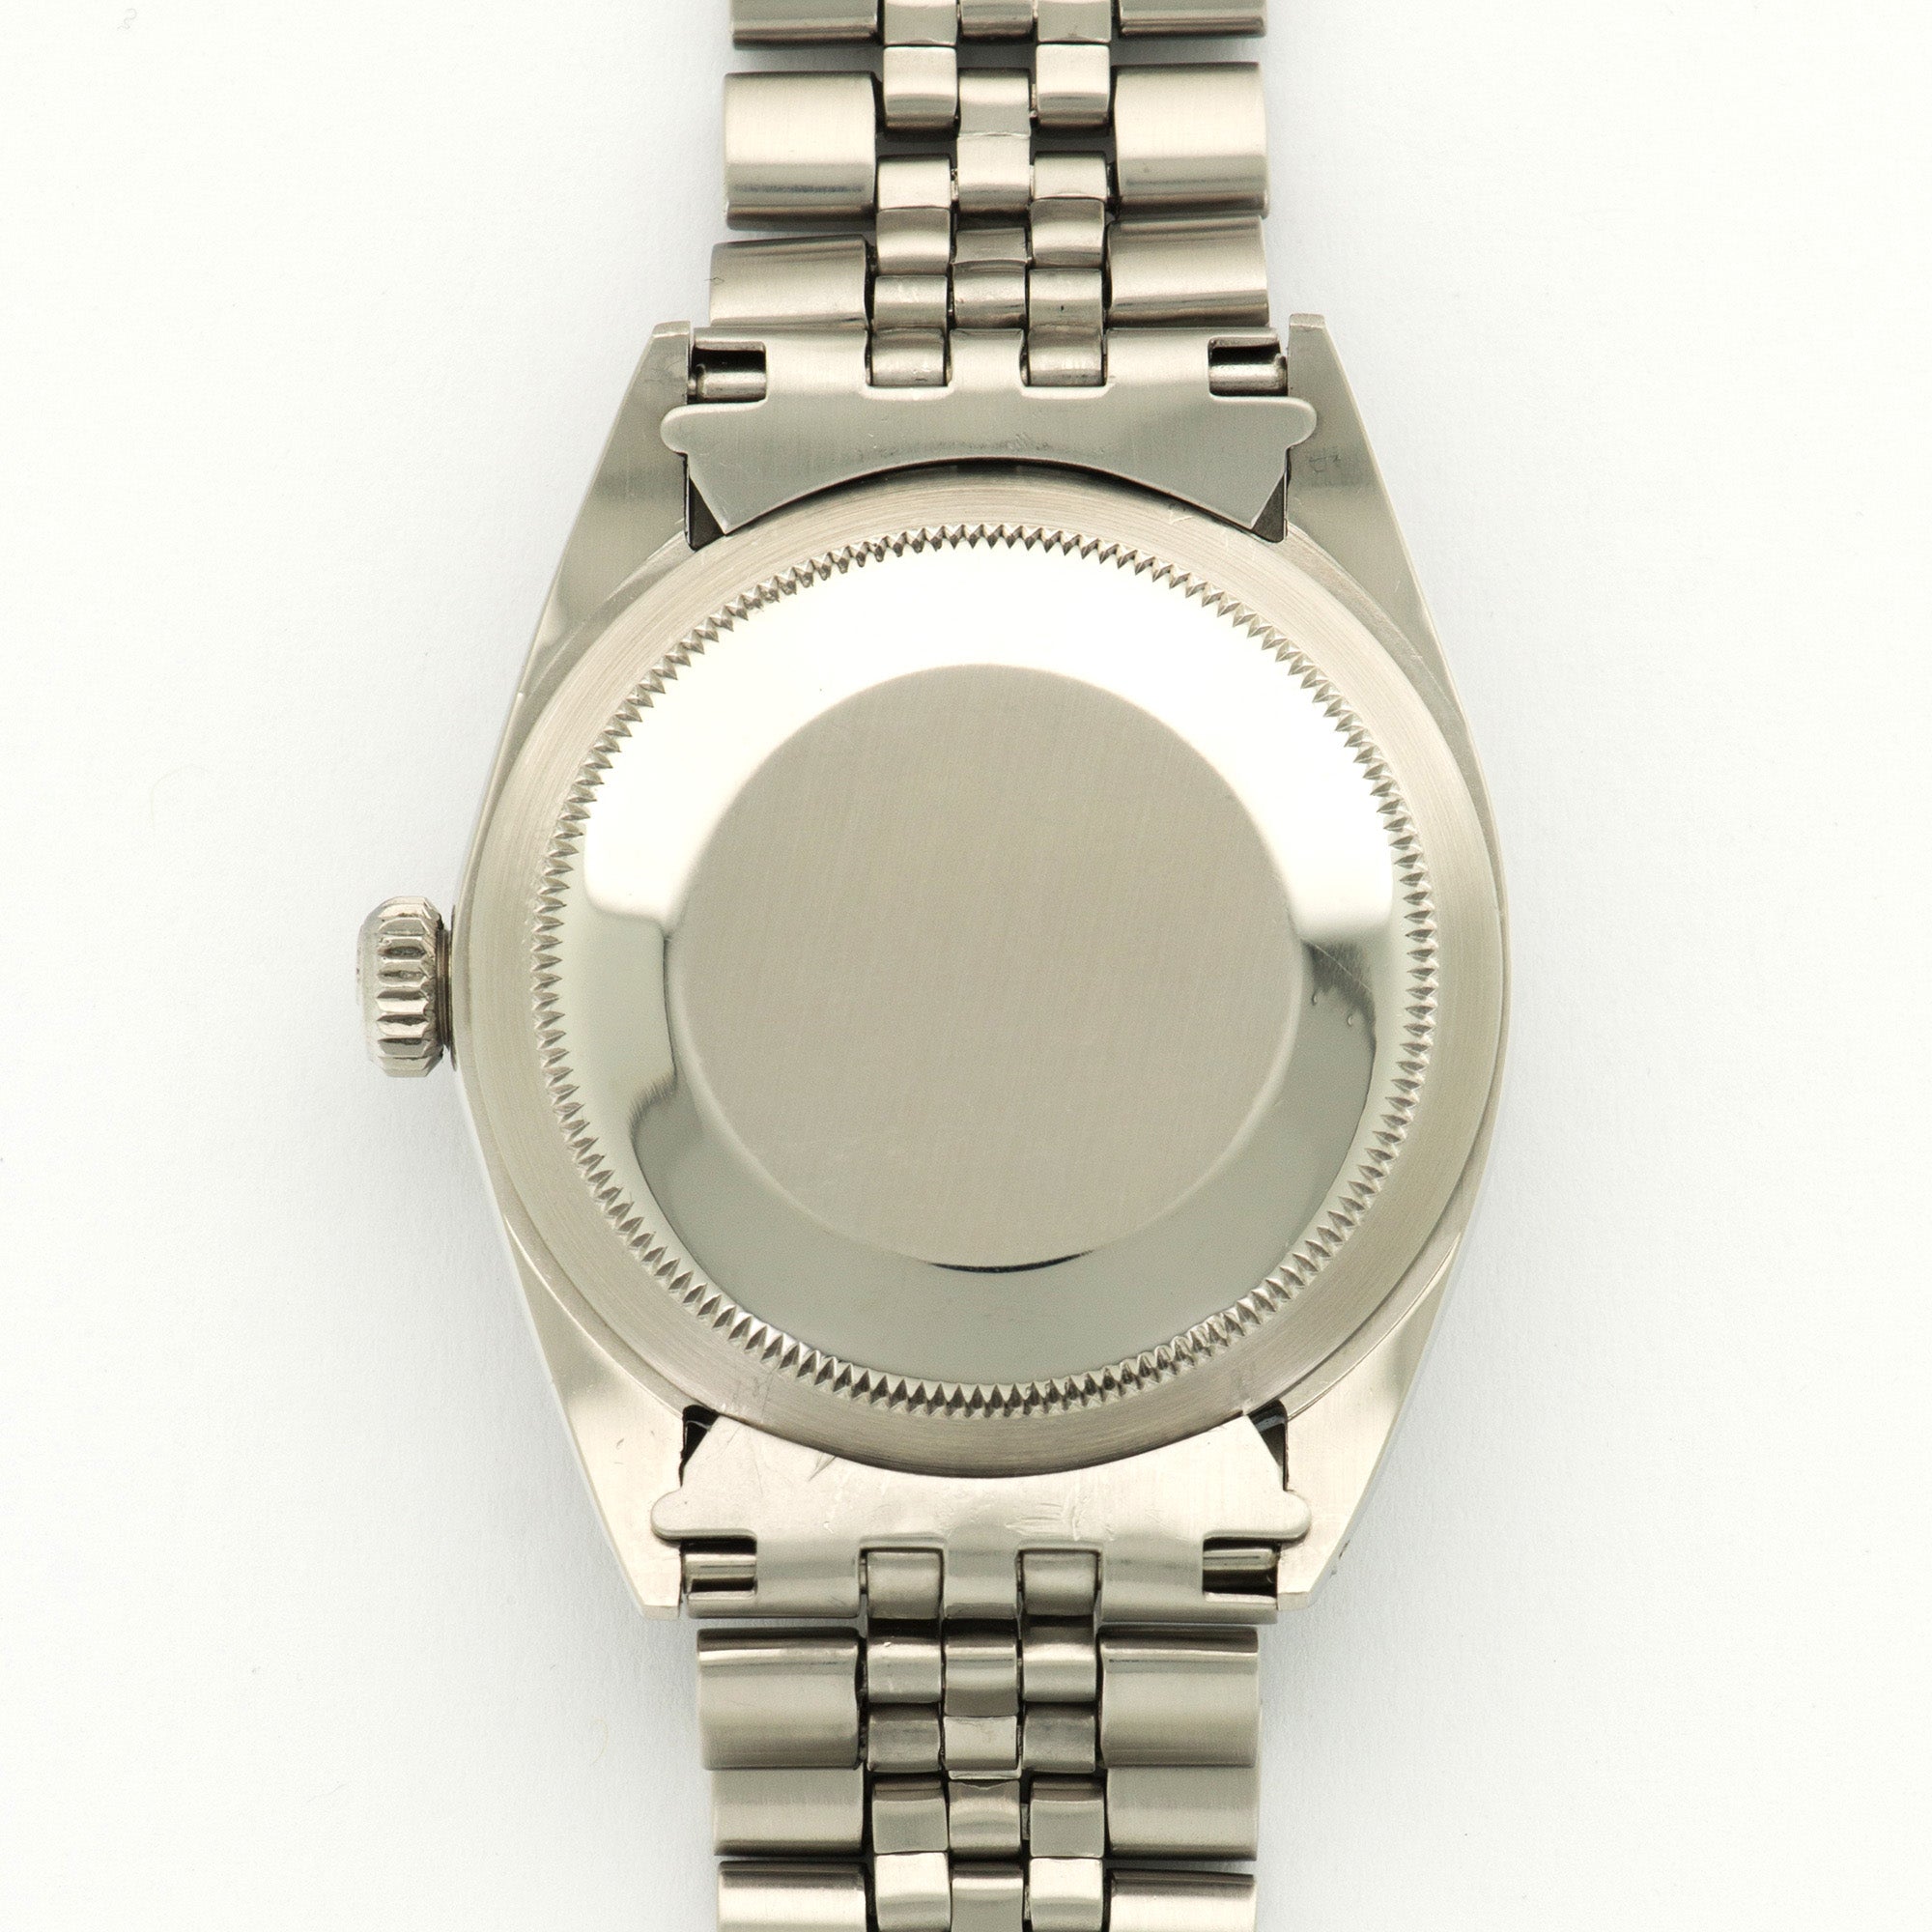 Rolex - Rolex Steel Explorer Watch Ref. 1016 - The Keystone Watches